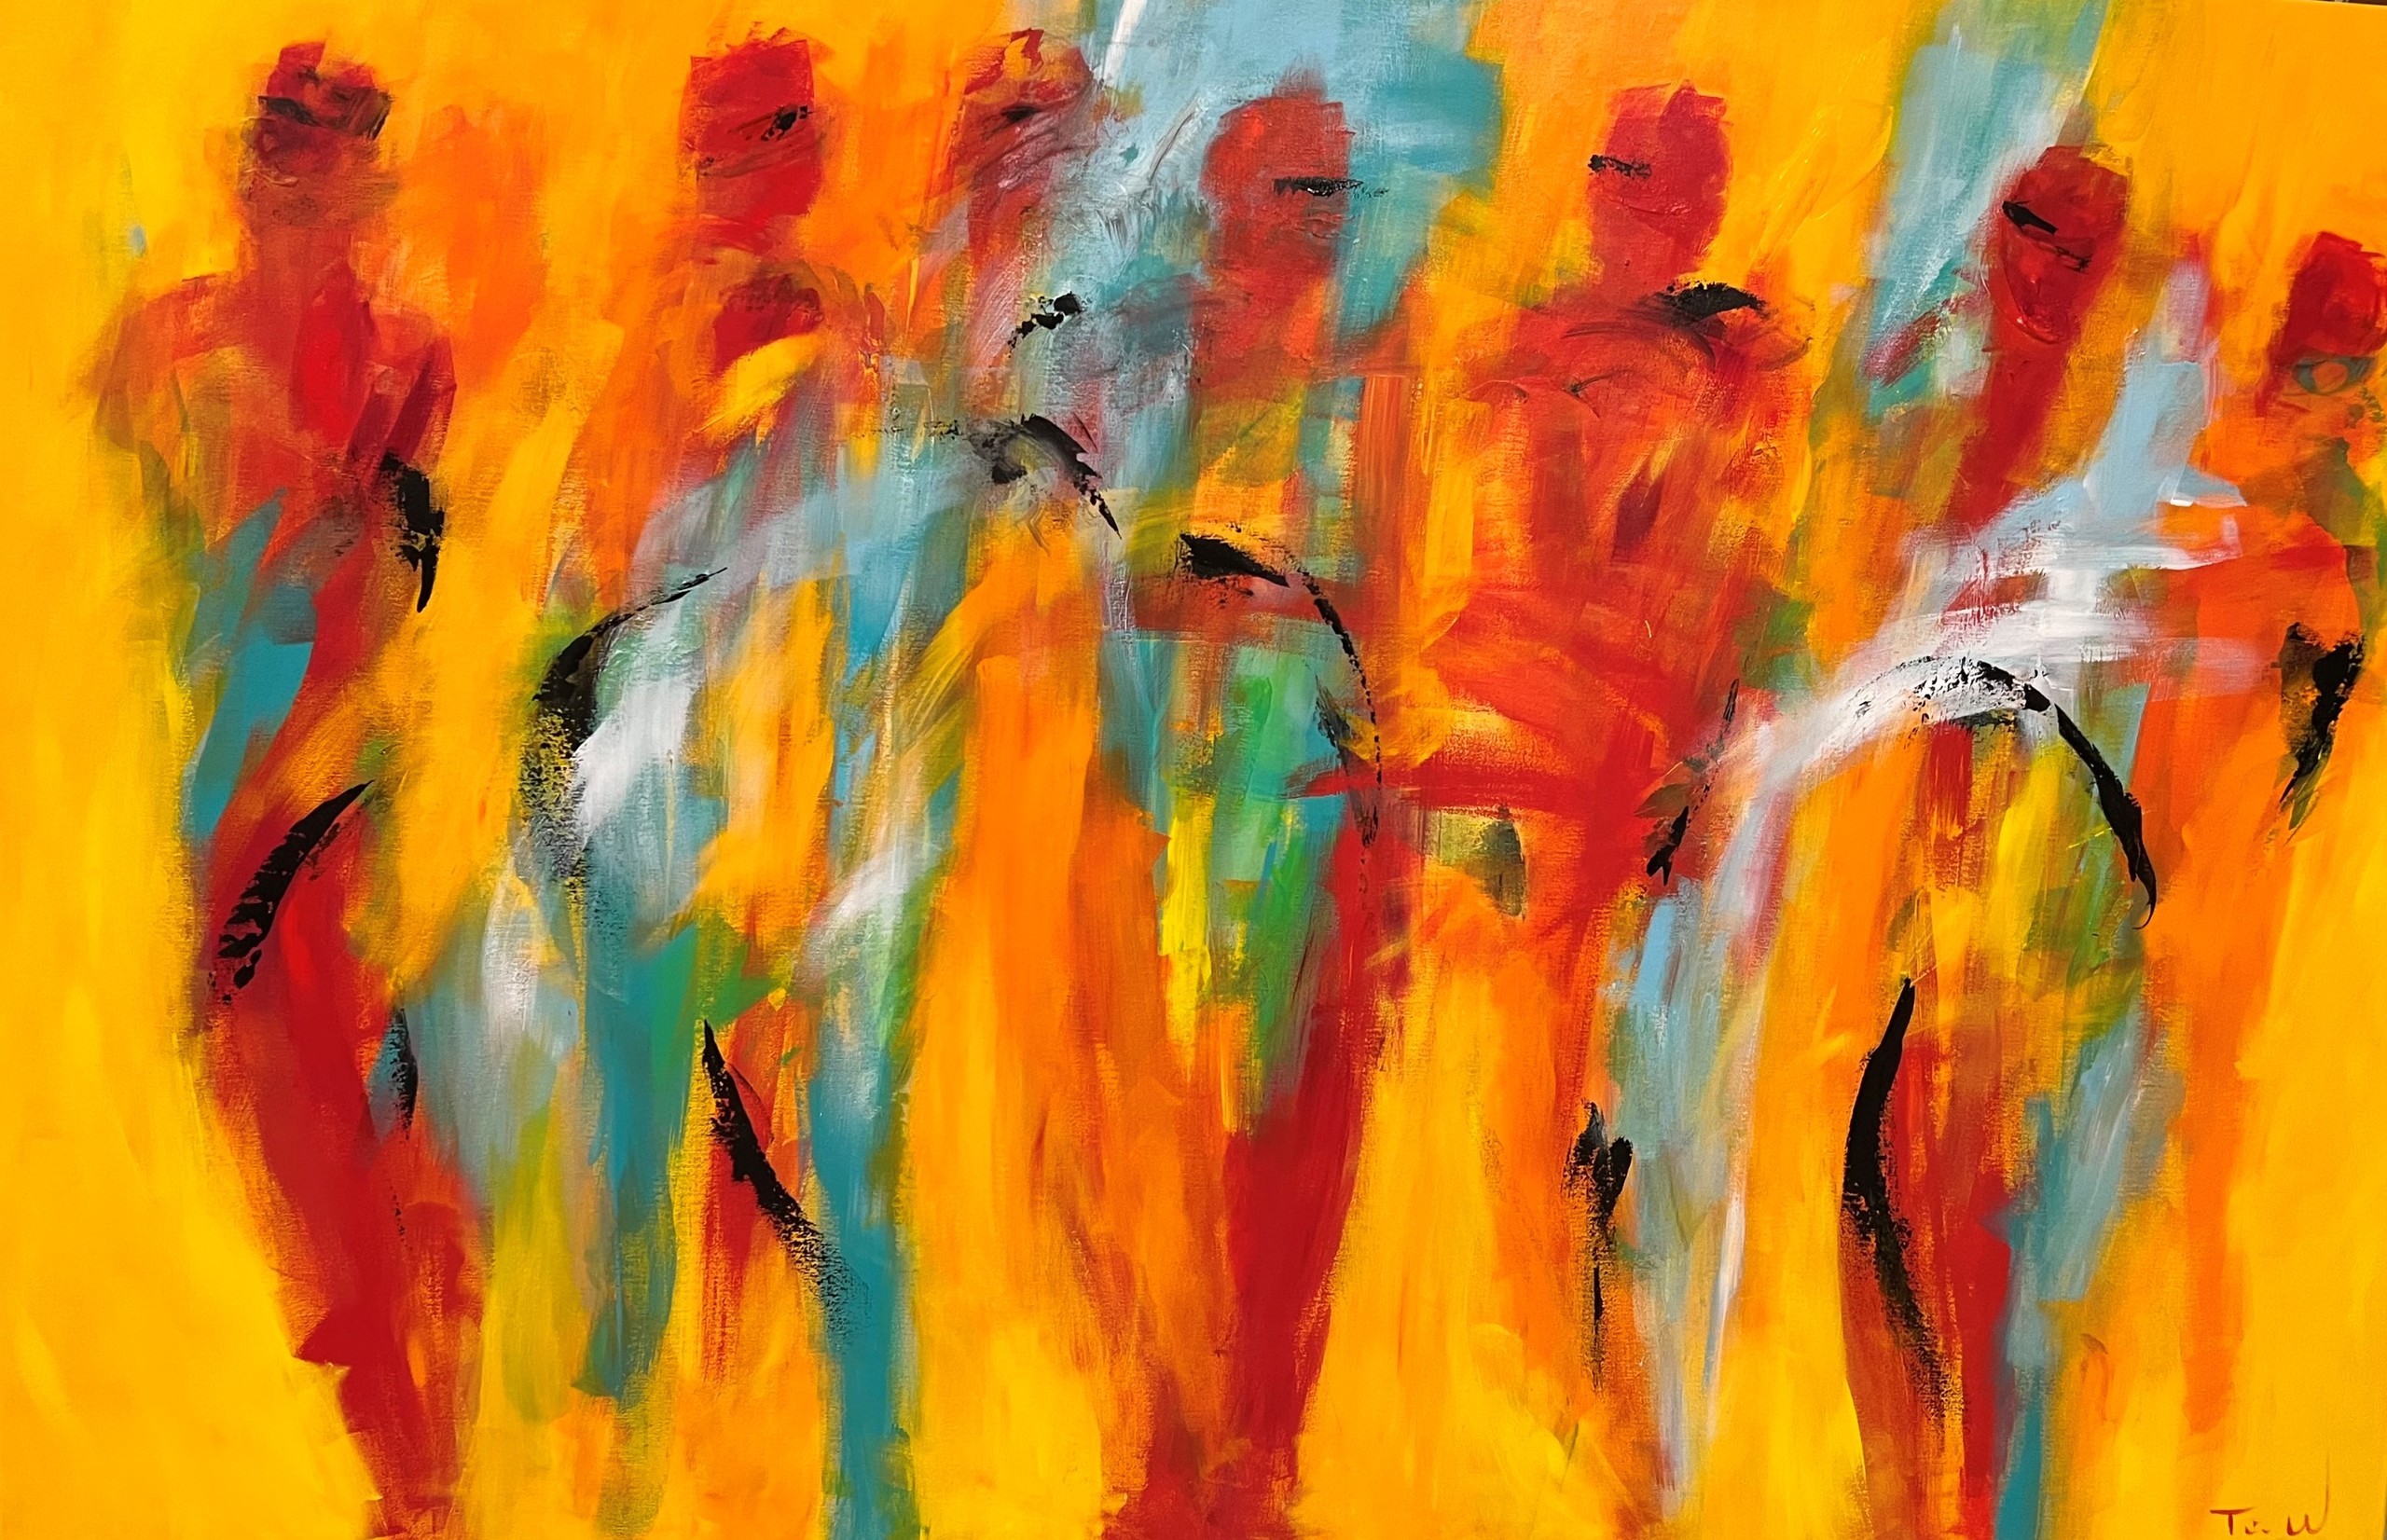 Stort maleri i glade farver med mennesker i bevægelse - måske dans.